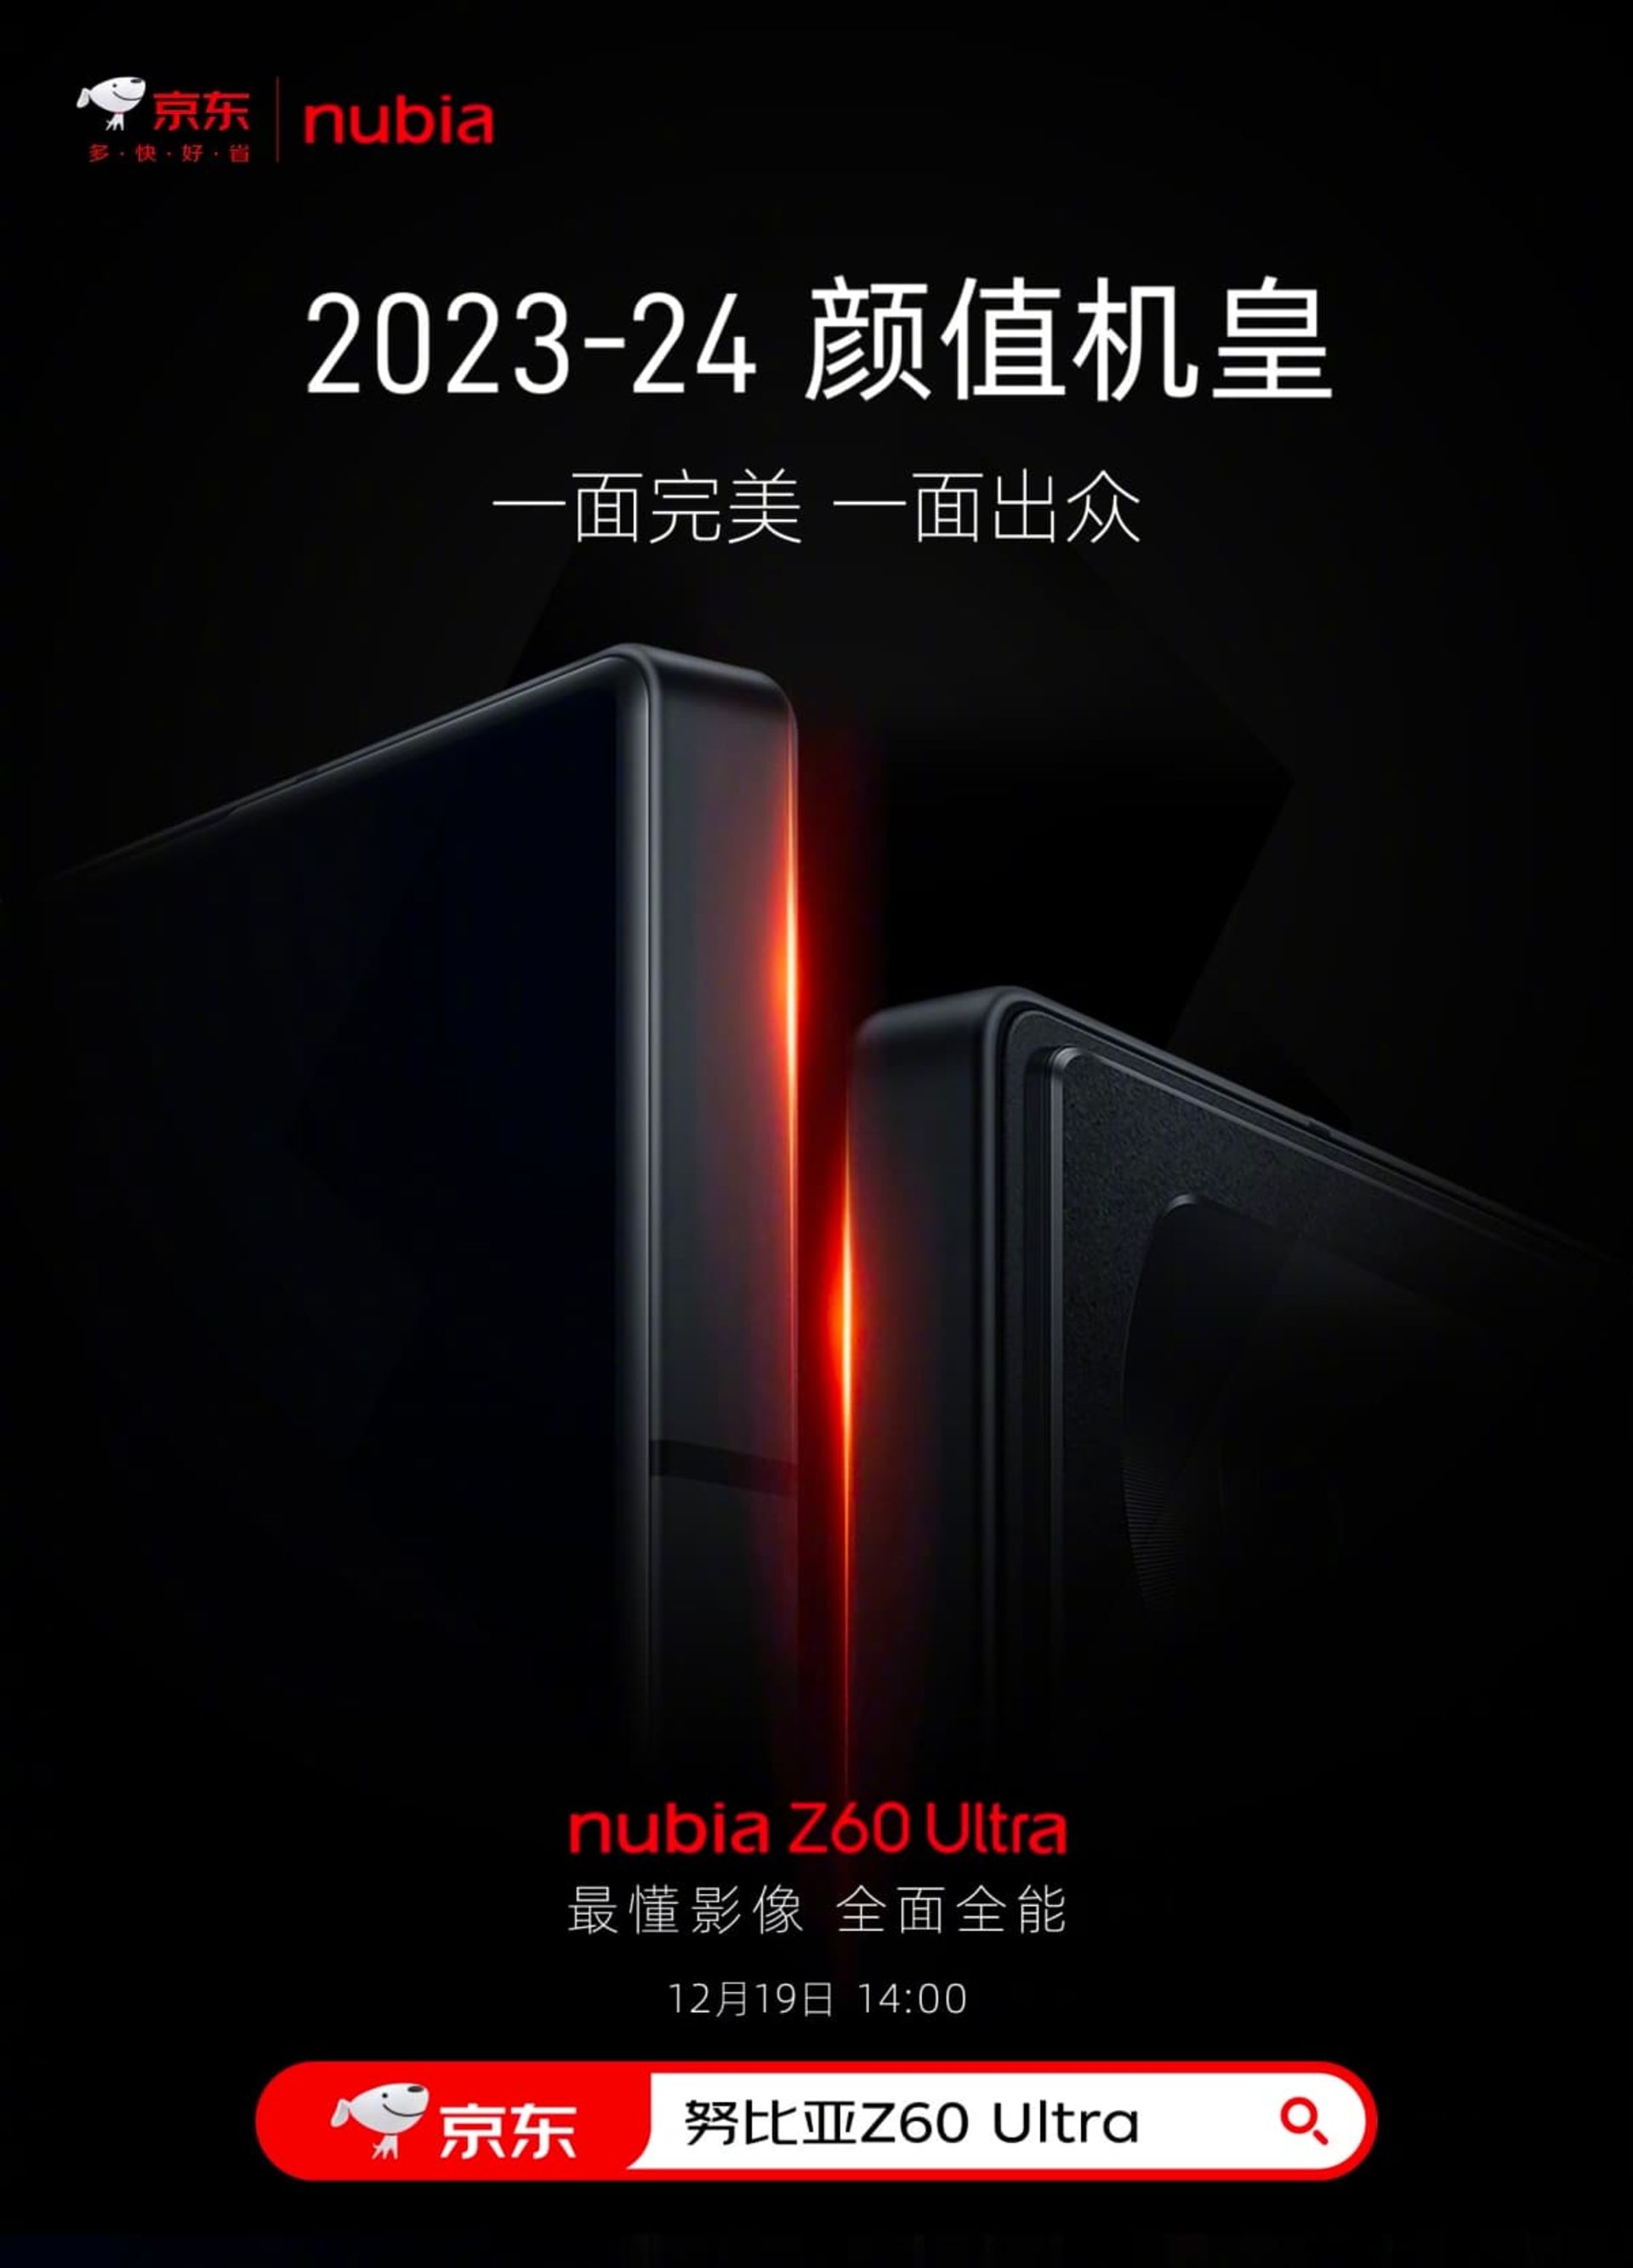 نمایش بدنه دستگاه در پوستر گوشی نوبیا Z60 Ultra